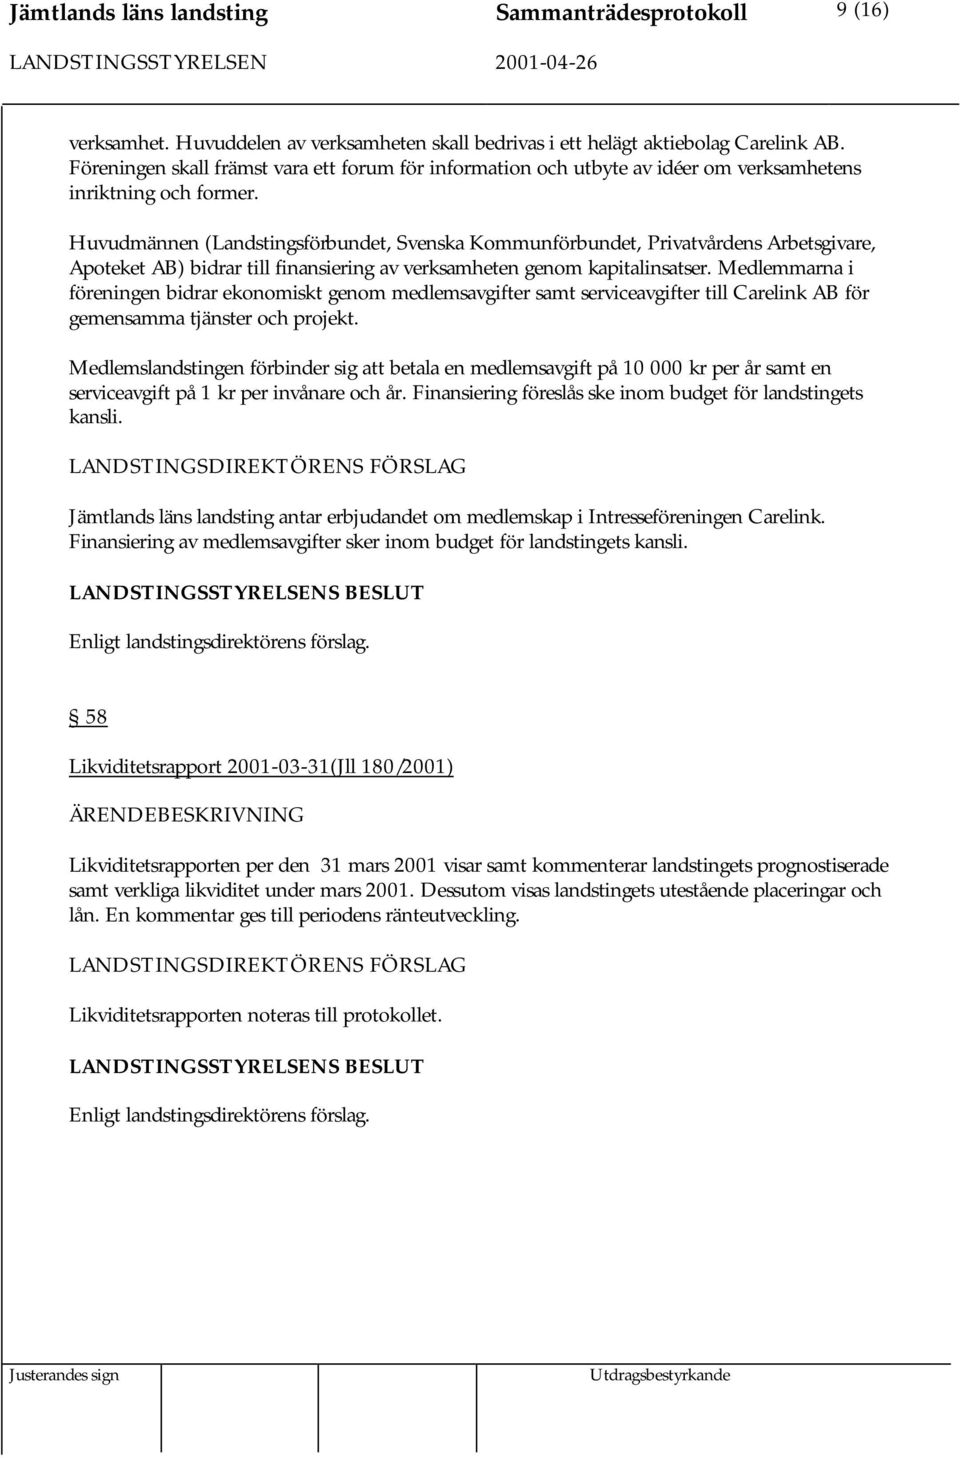 Huvudmännen (Landstingsförbundet, Svenska Kommunförbundet, Privatvårdens Arbetsgivare, Apoteket AB) bidrar till finansiering av verksamheten genom kapitalinsatser.